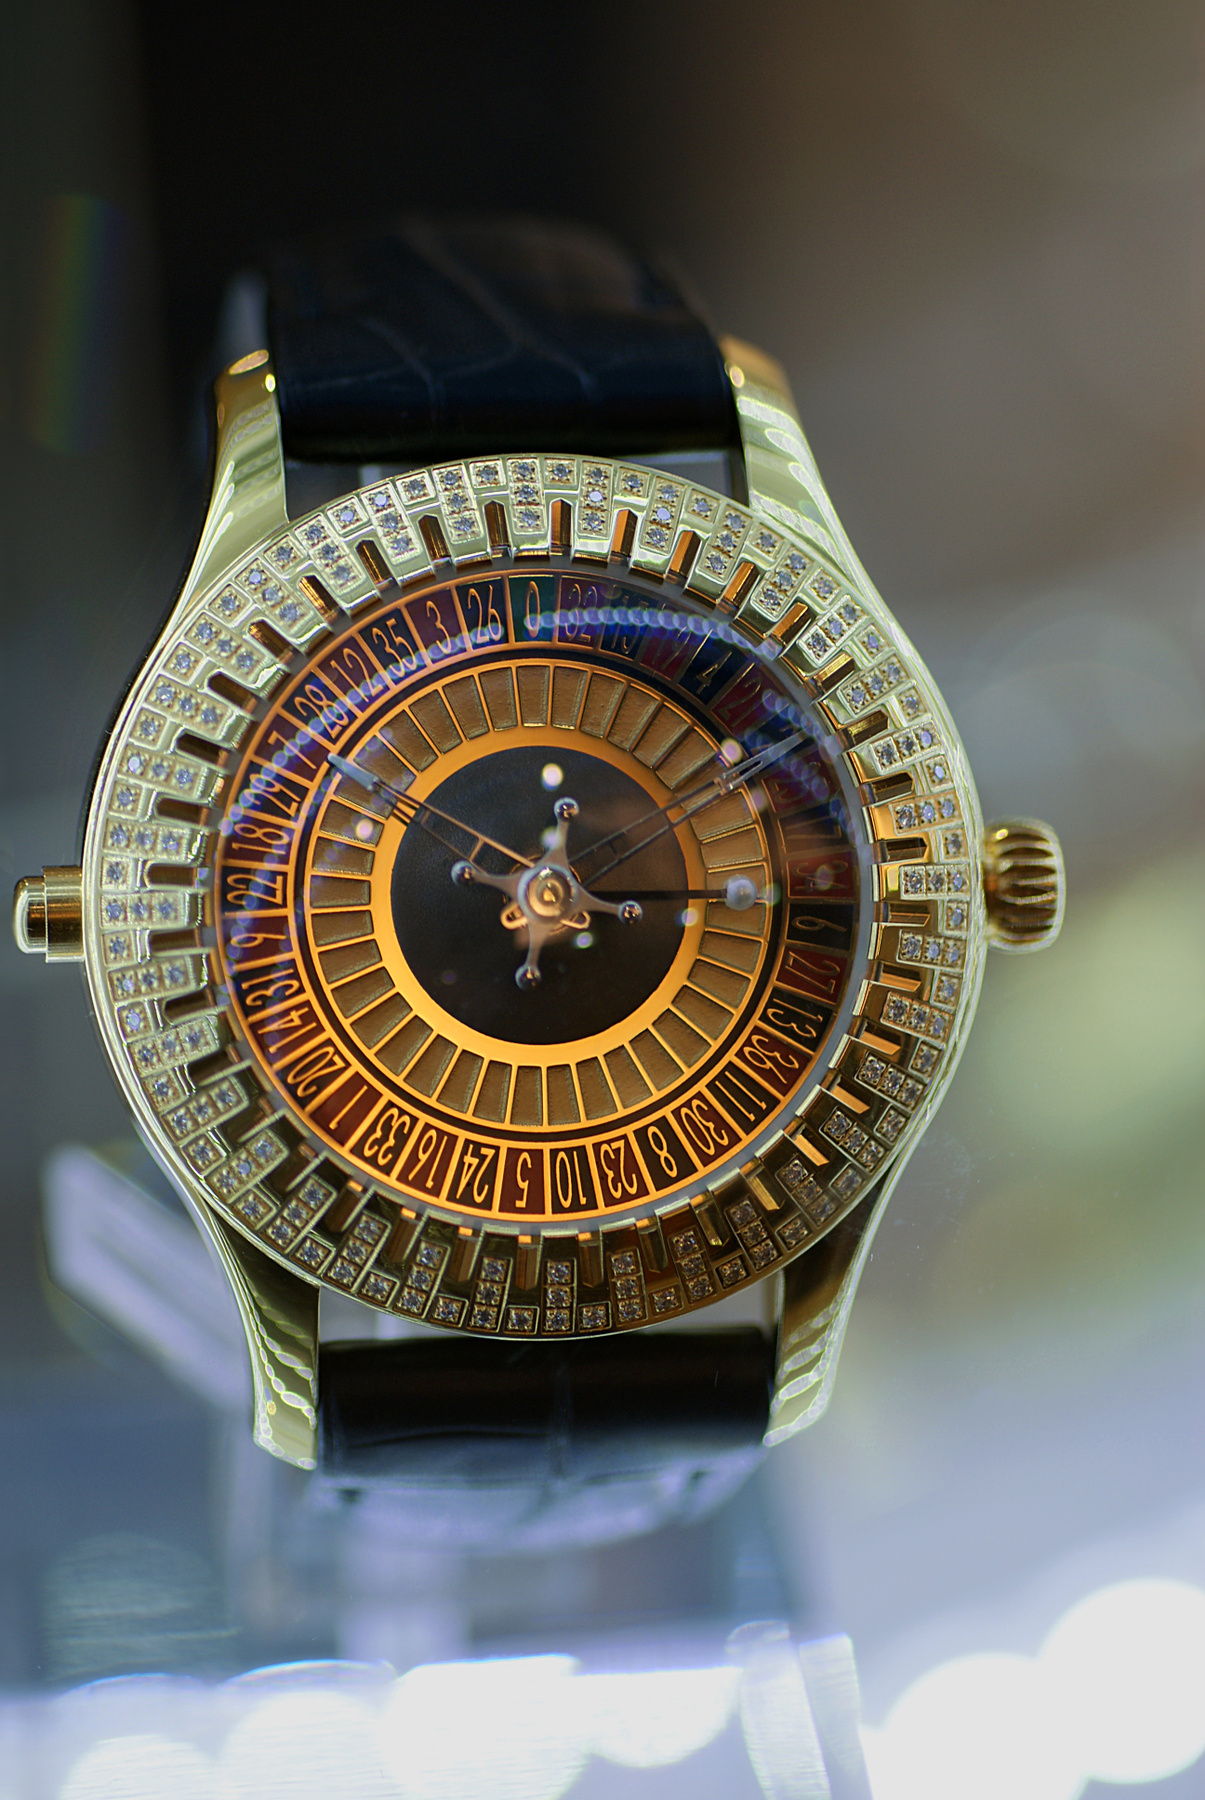 Часы успешного игрока предметка предметная съёмка часы рулетка ювелирка